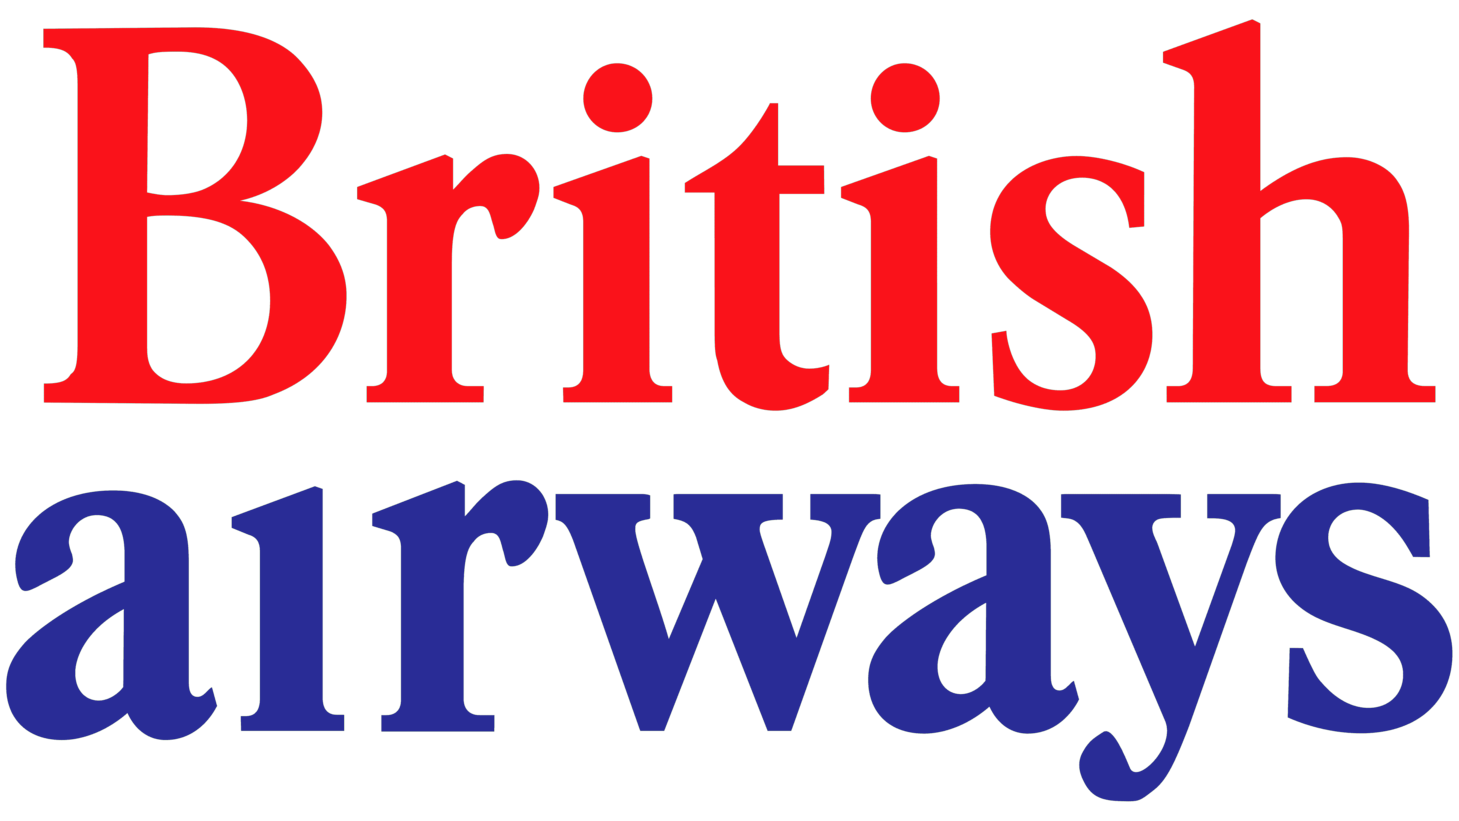 British airways sign 1973 1984